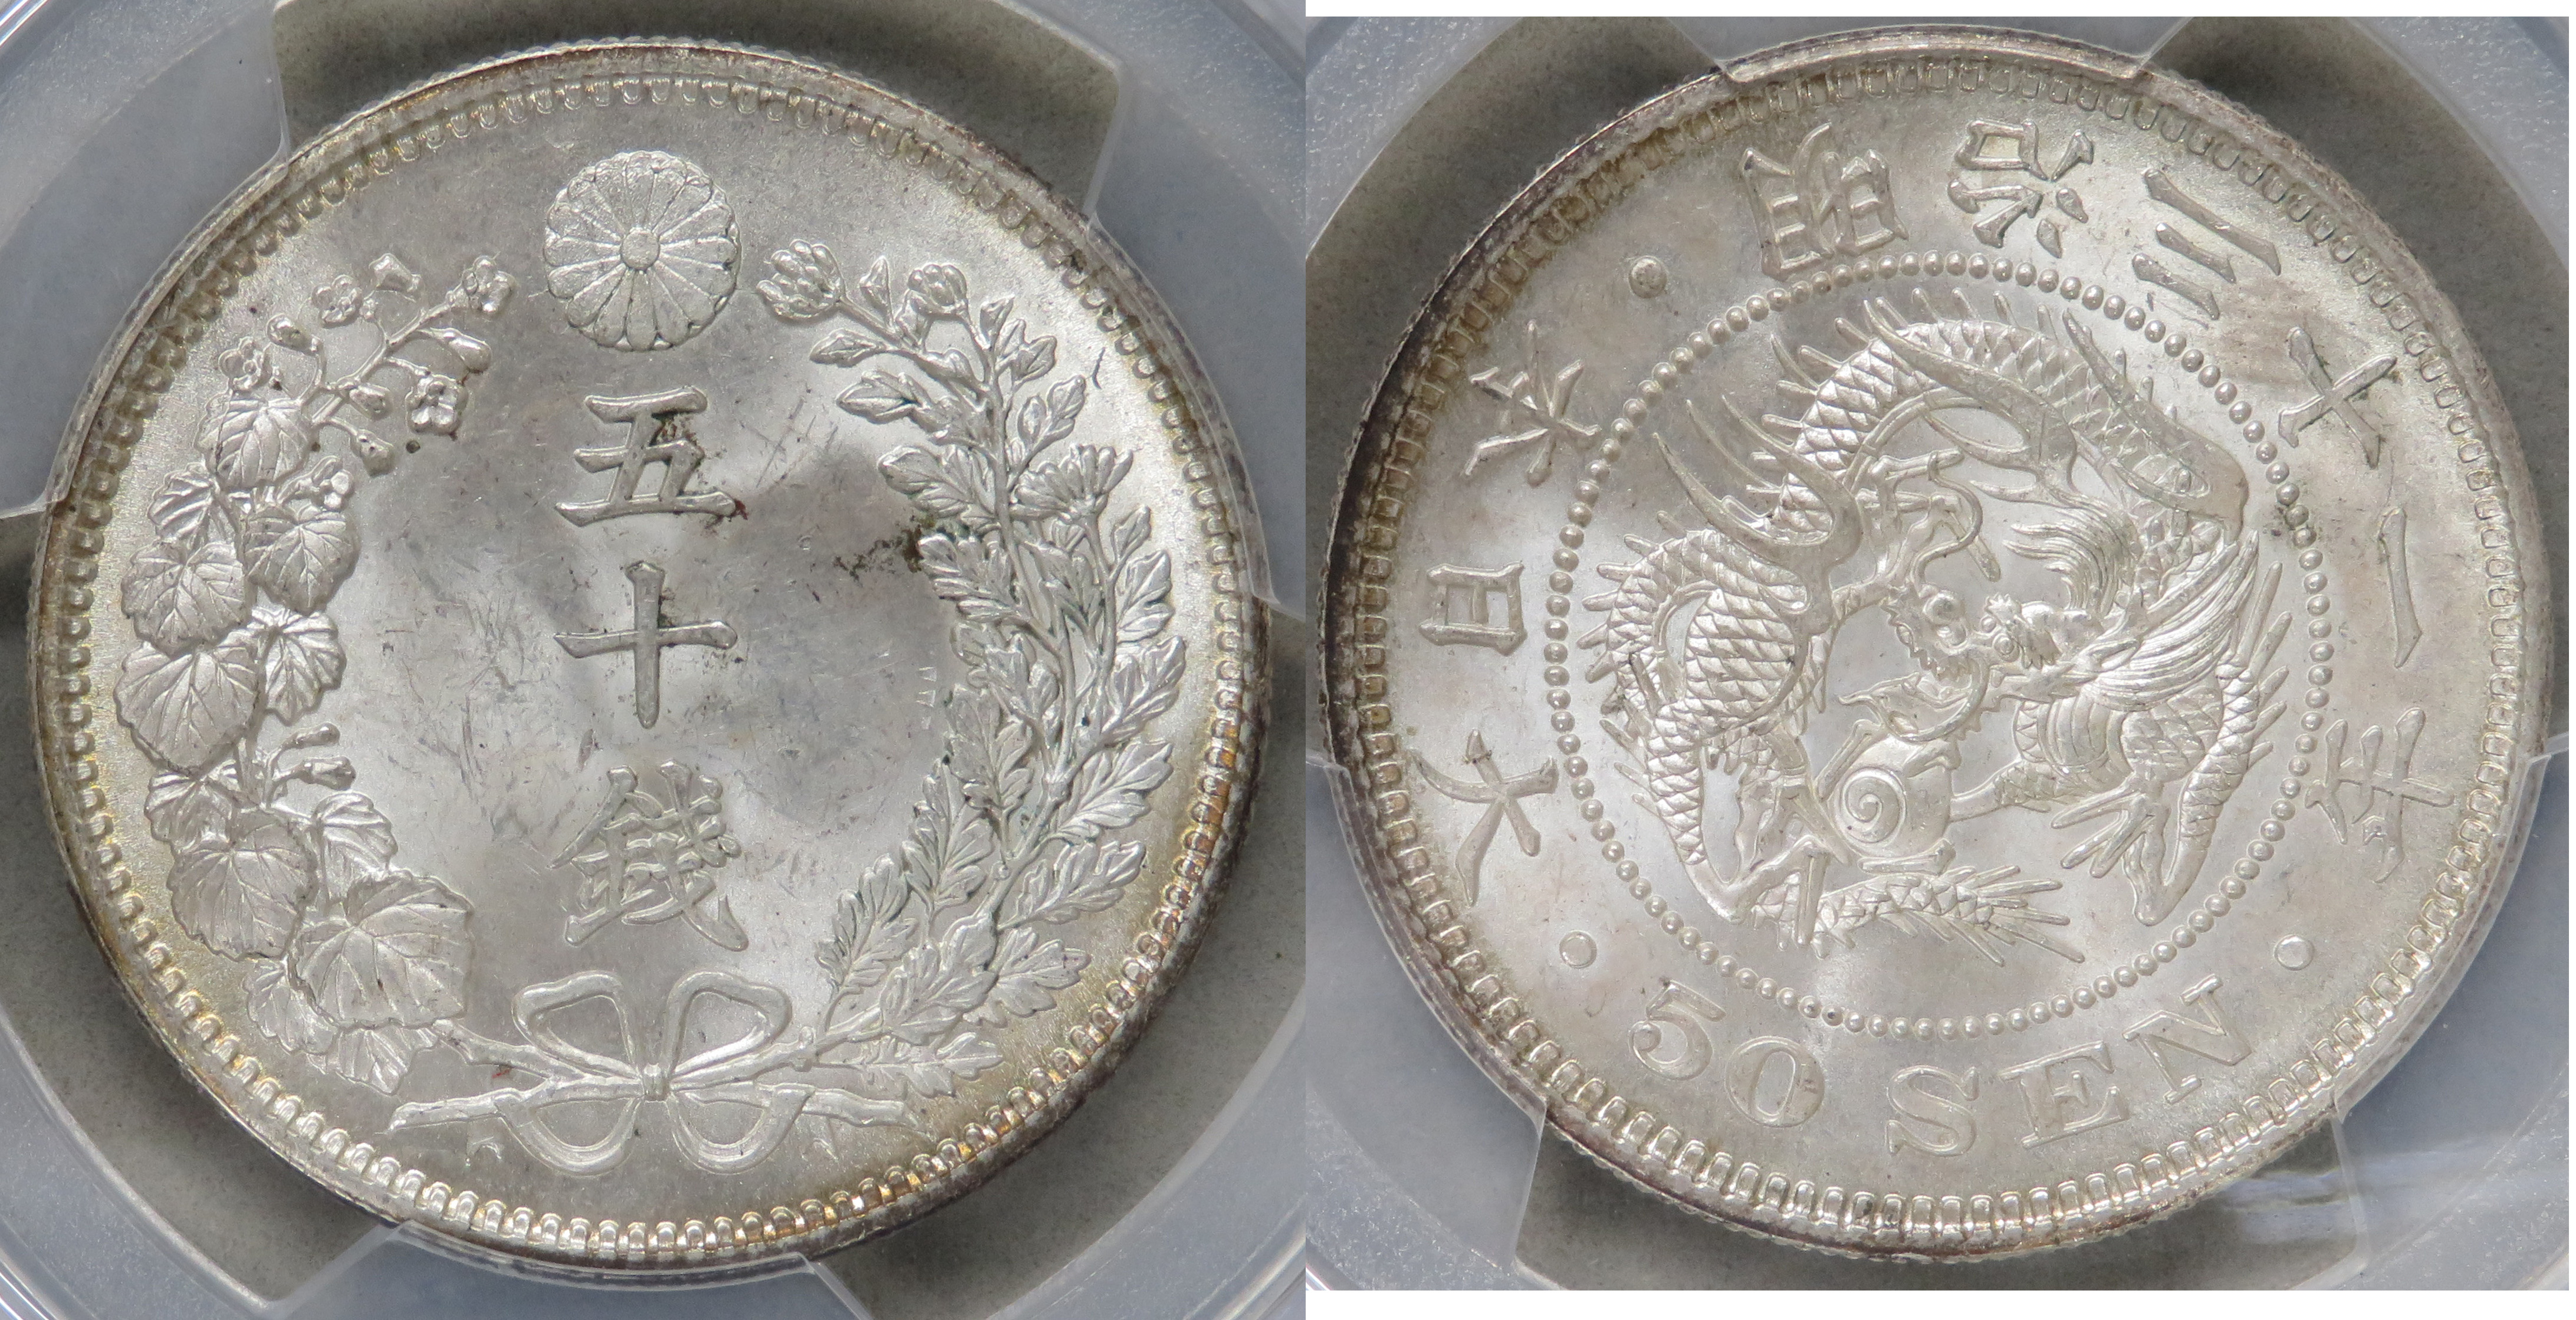 50銭銀貨 明治4年 (1871年)普通円 PCGS AU53